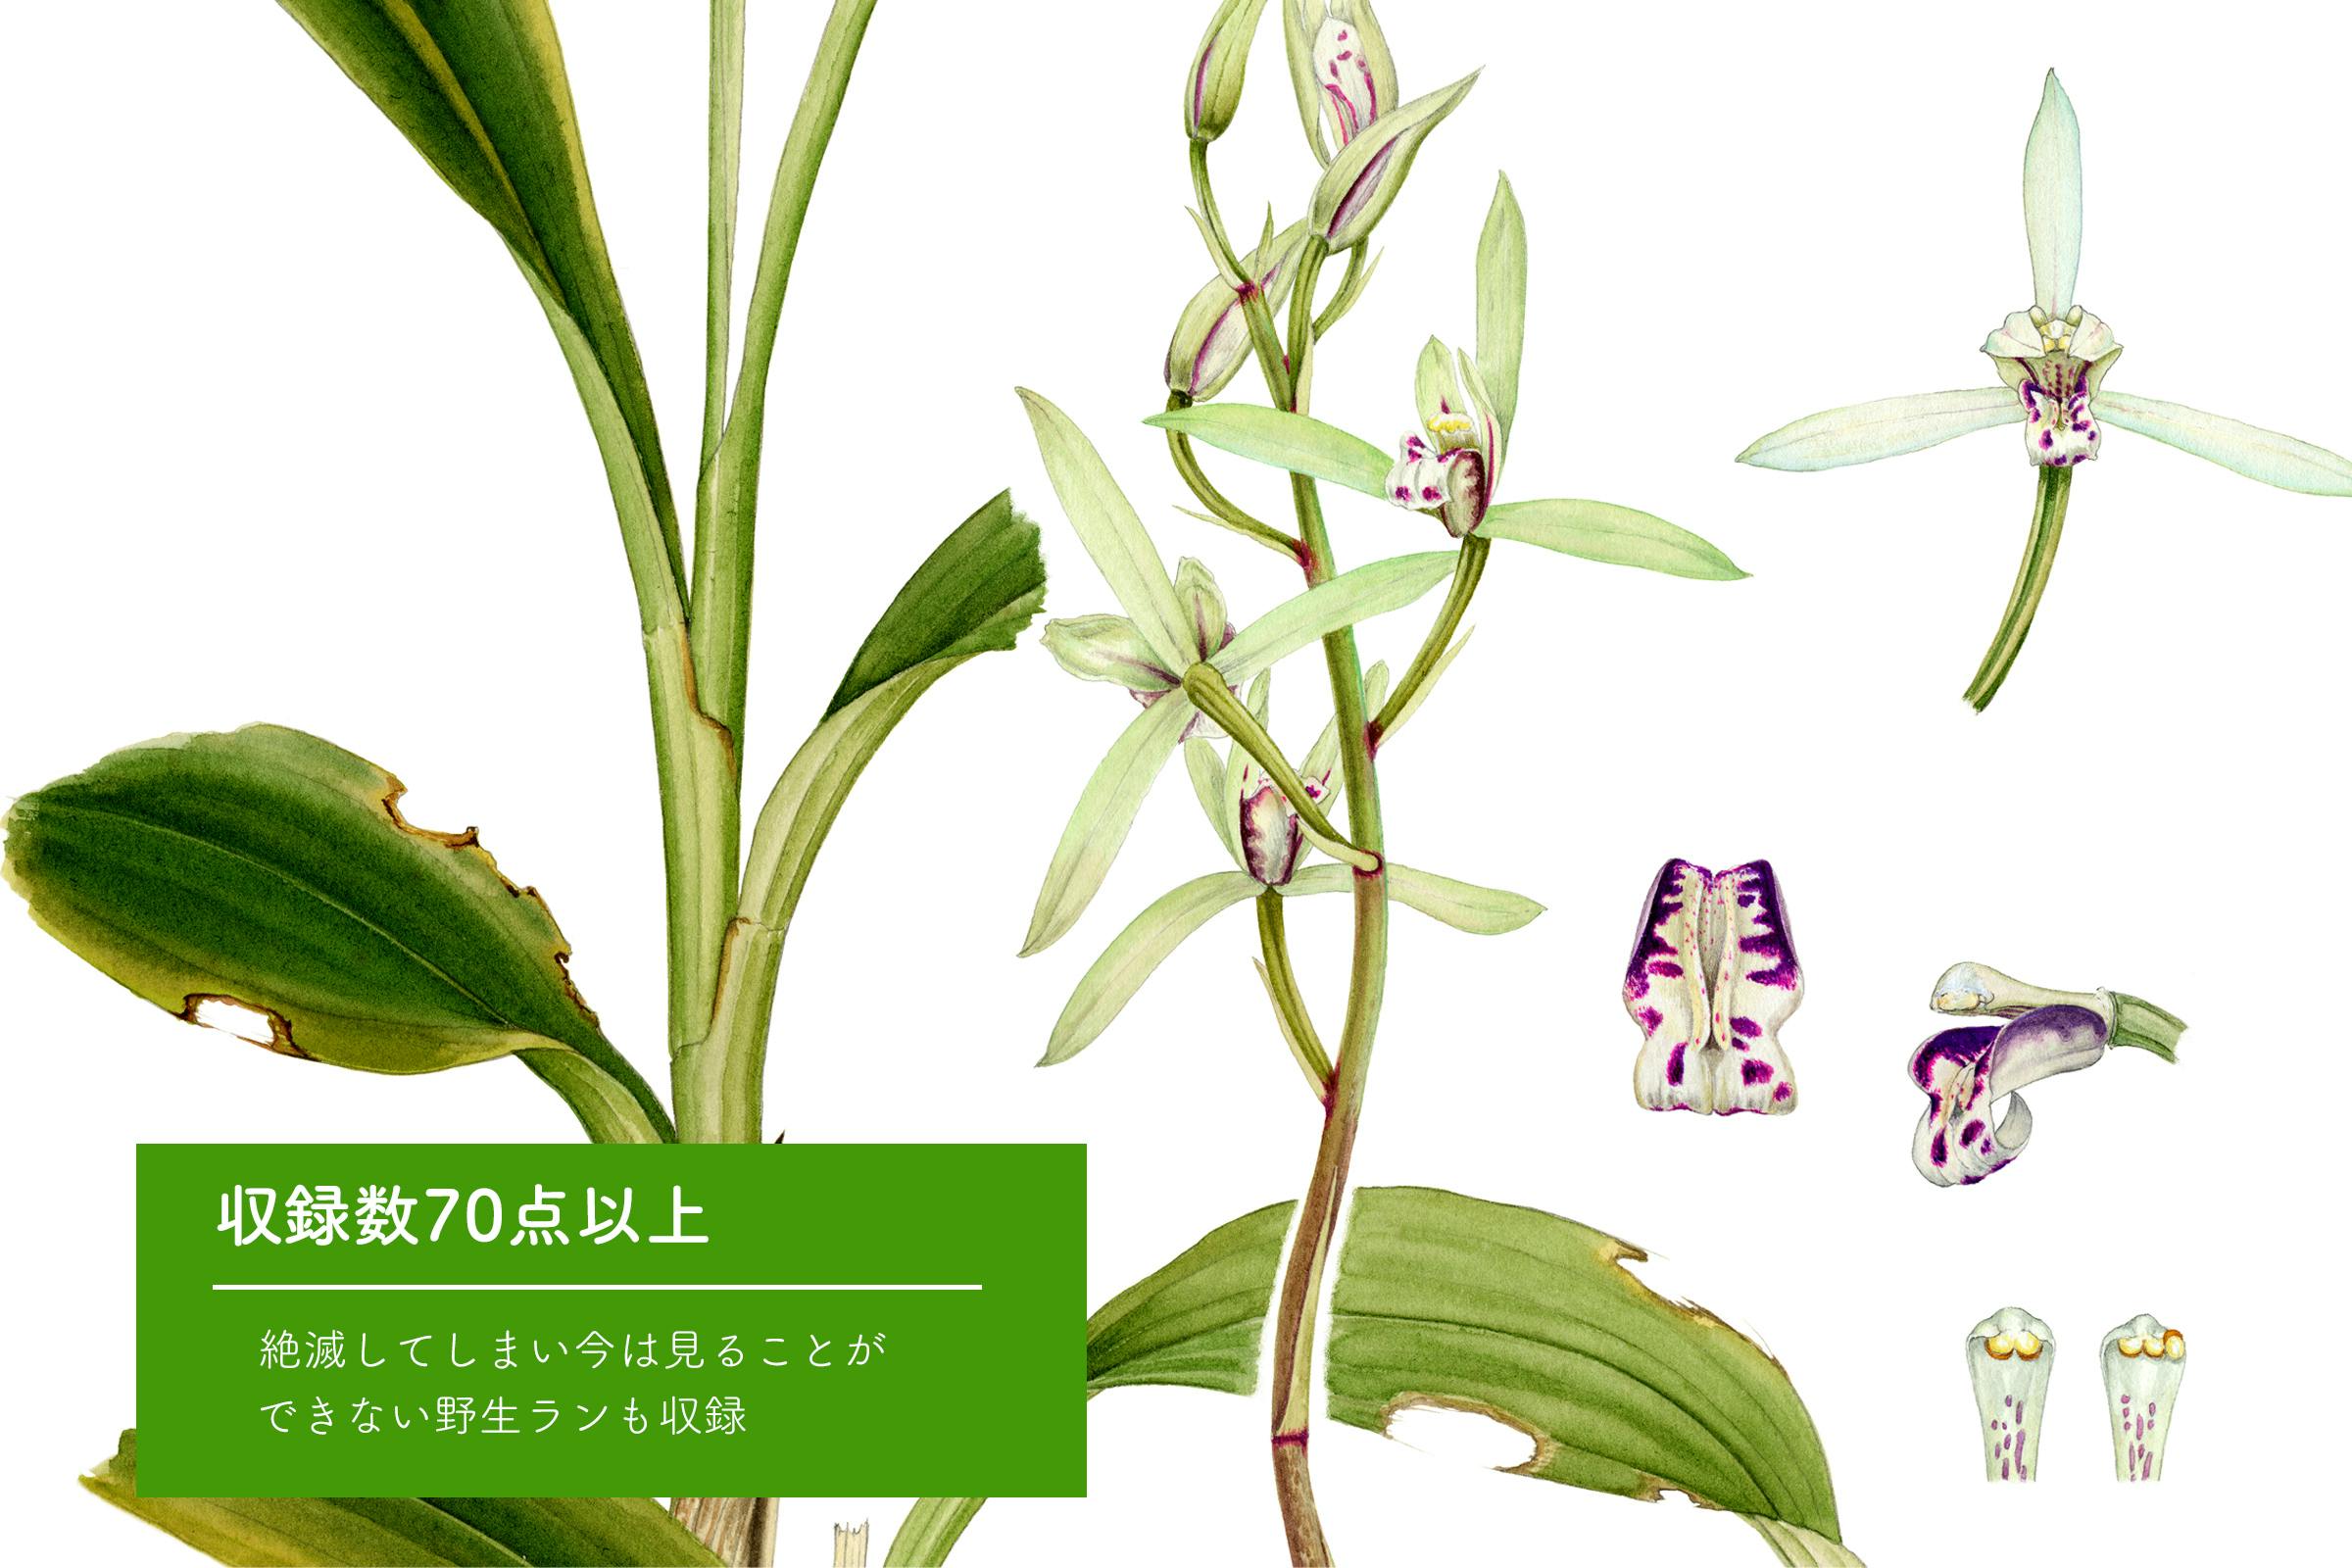 【希少本】フィリピン産ラン科植物